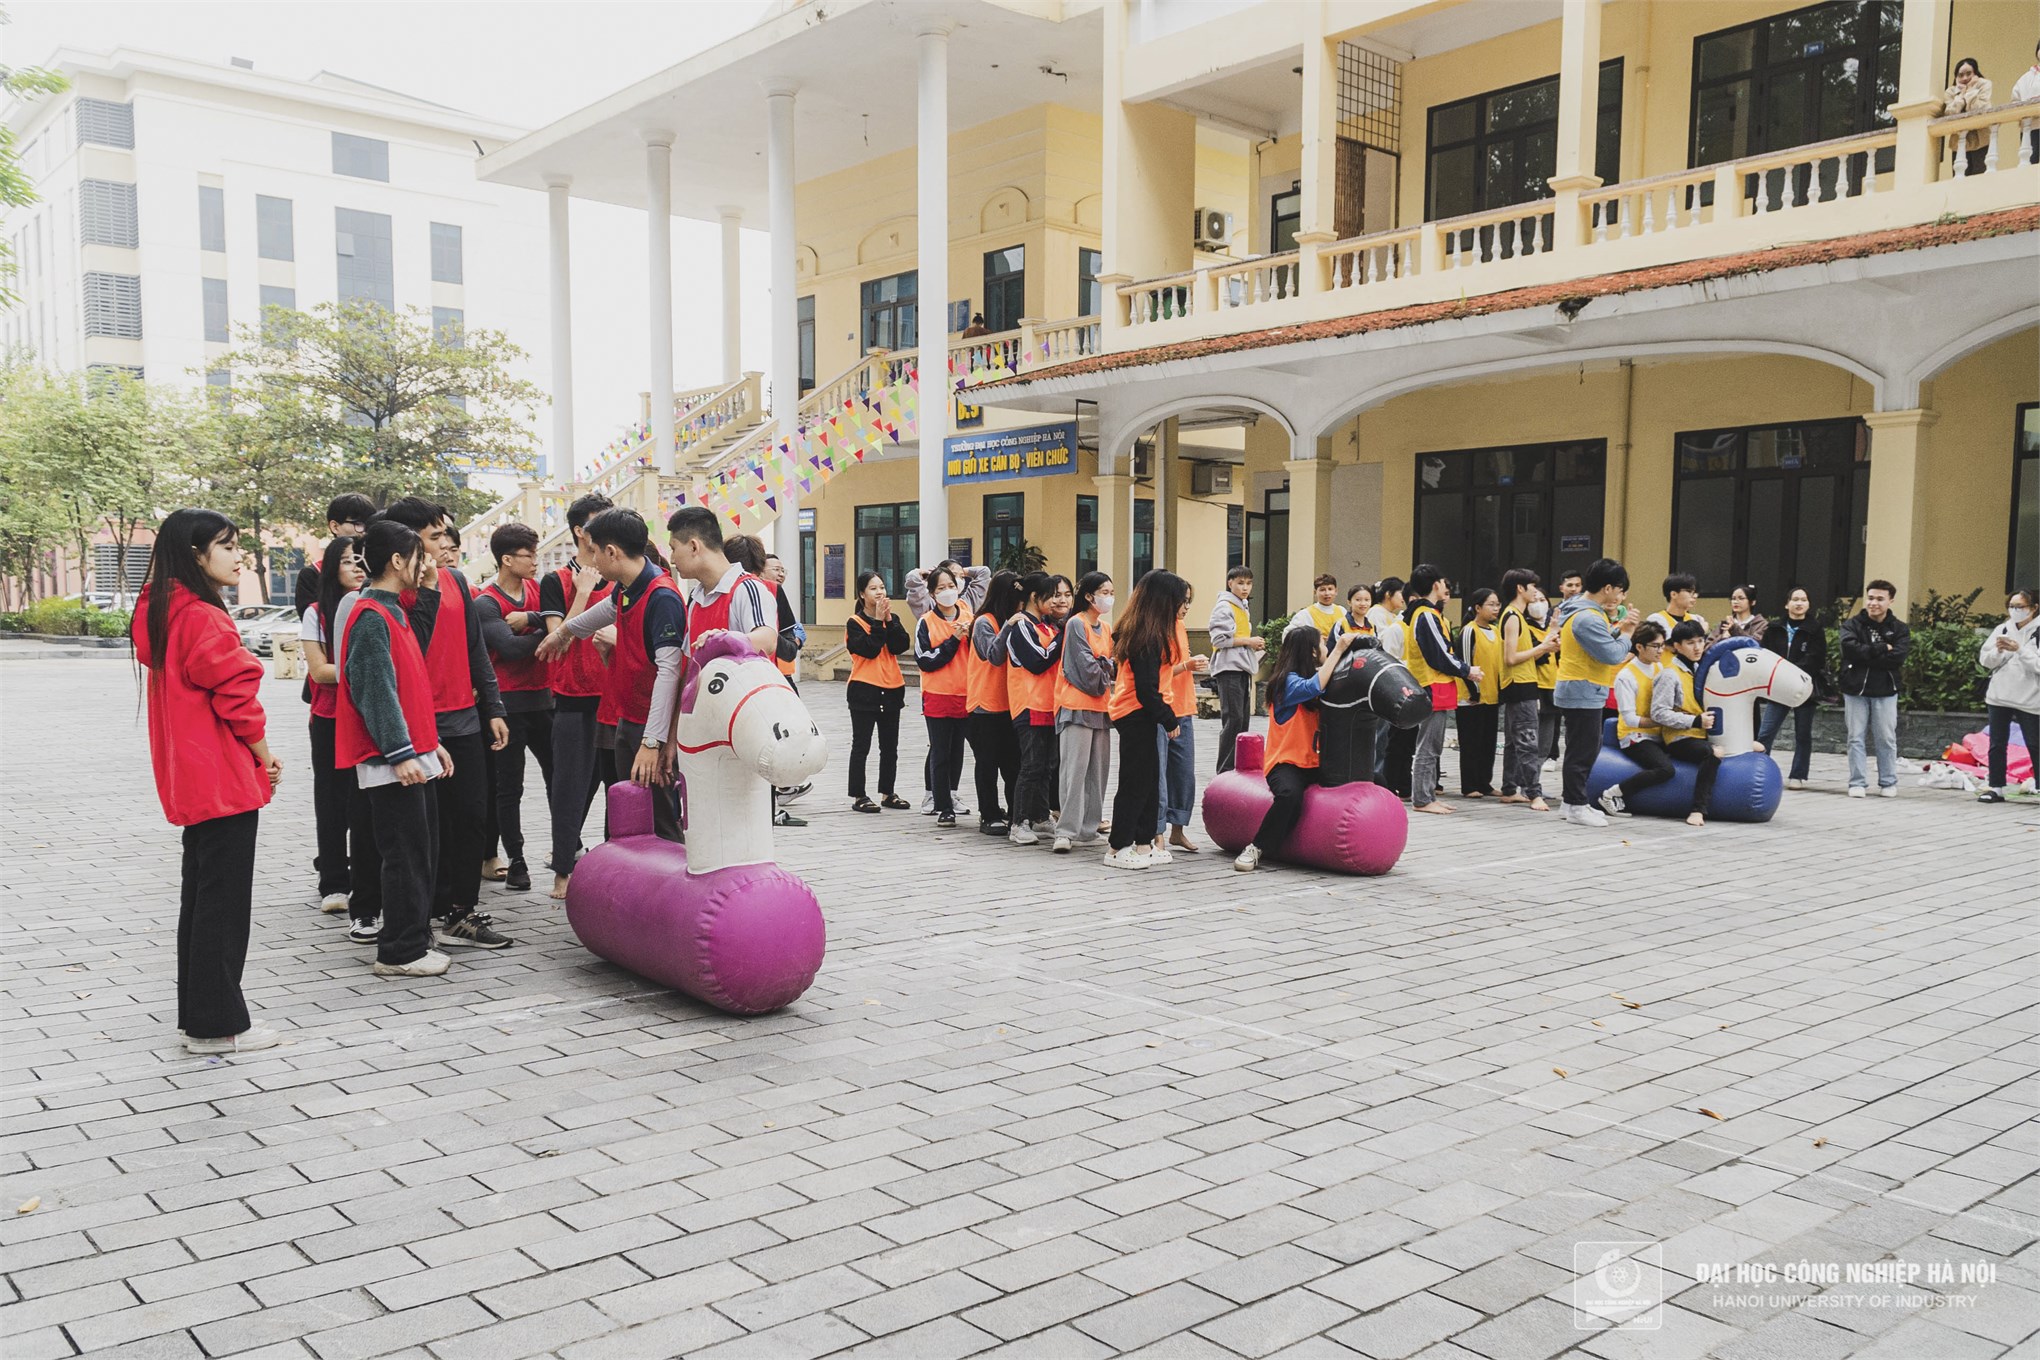 Tân sinh viên Đại học Công nghiệp Hà Nội cháy hết mình cùng Ngày hội HaUI CONNECTION 2023